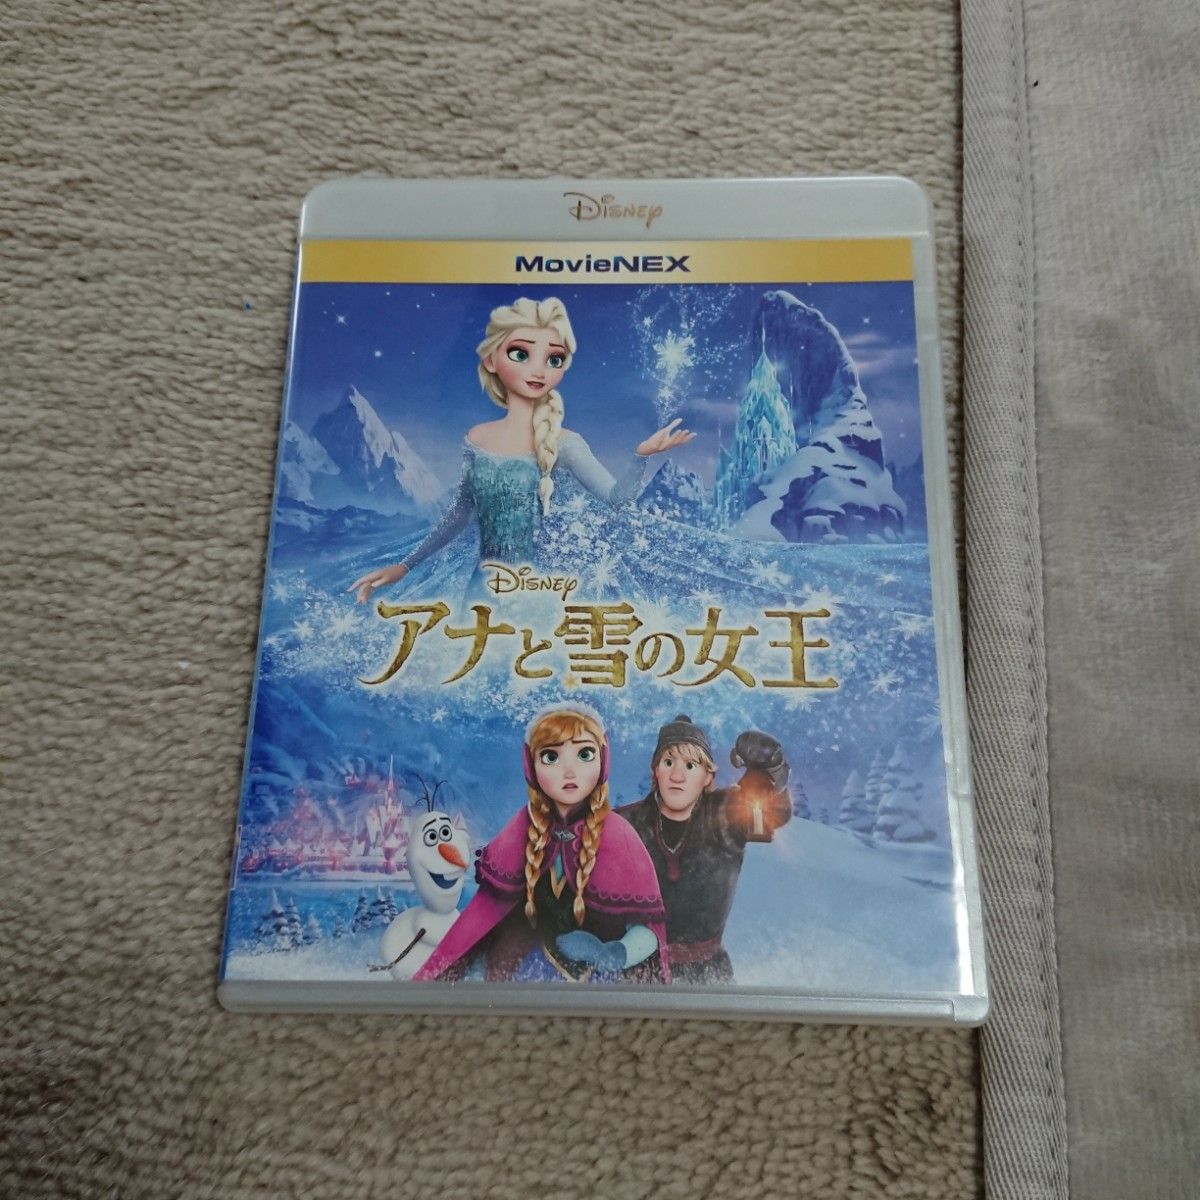 アナと雪の女王 MovieNEX [ブルーレイ+DVD+MovieNEXワールド] [Blu-ray]